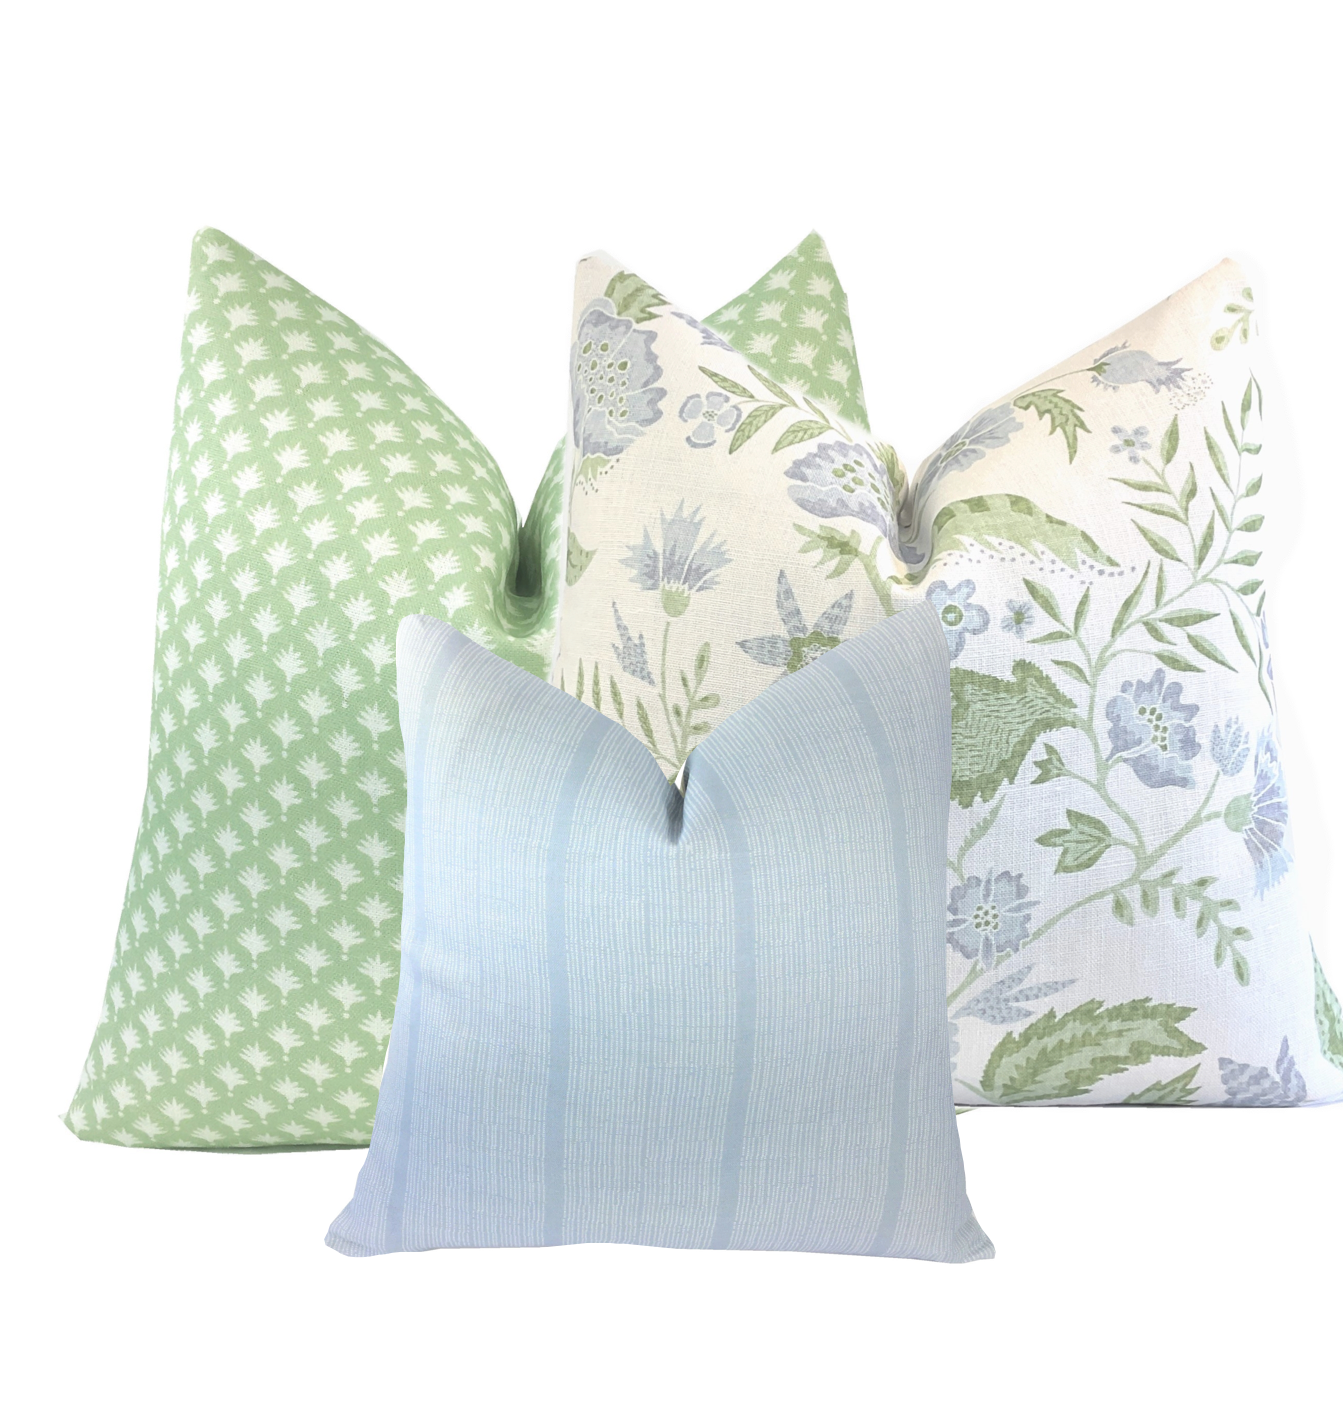 Coastal Cushions, Coastal Pillows, Cushion Cover, Indigo Blue Pillows,  Coastal Vista Linen Pillows, Pillow Cover. 